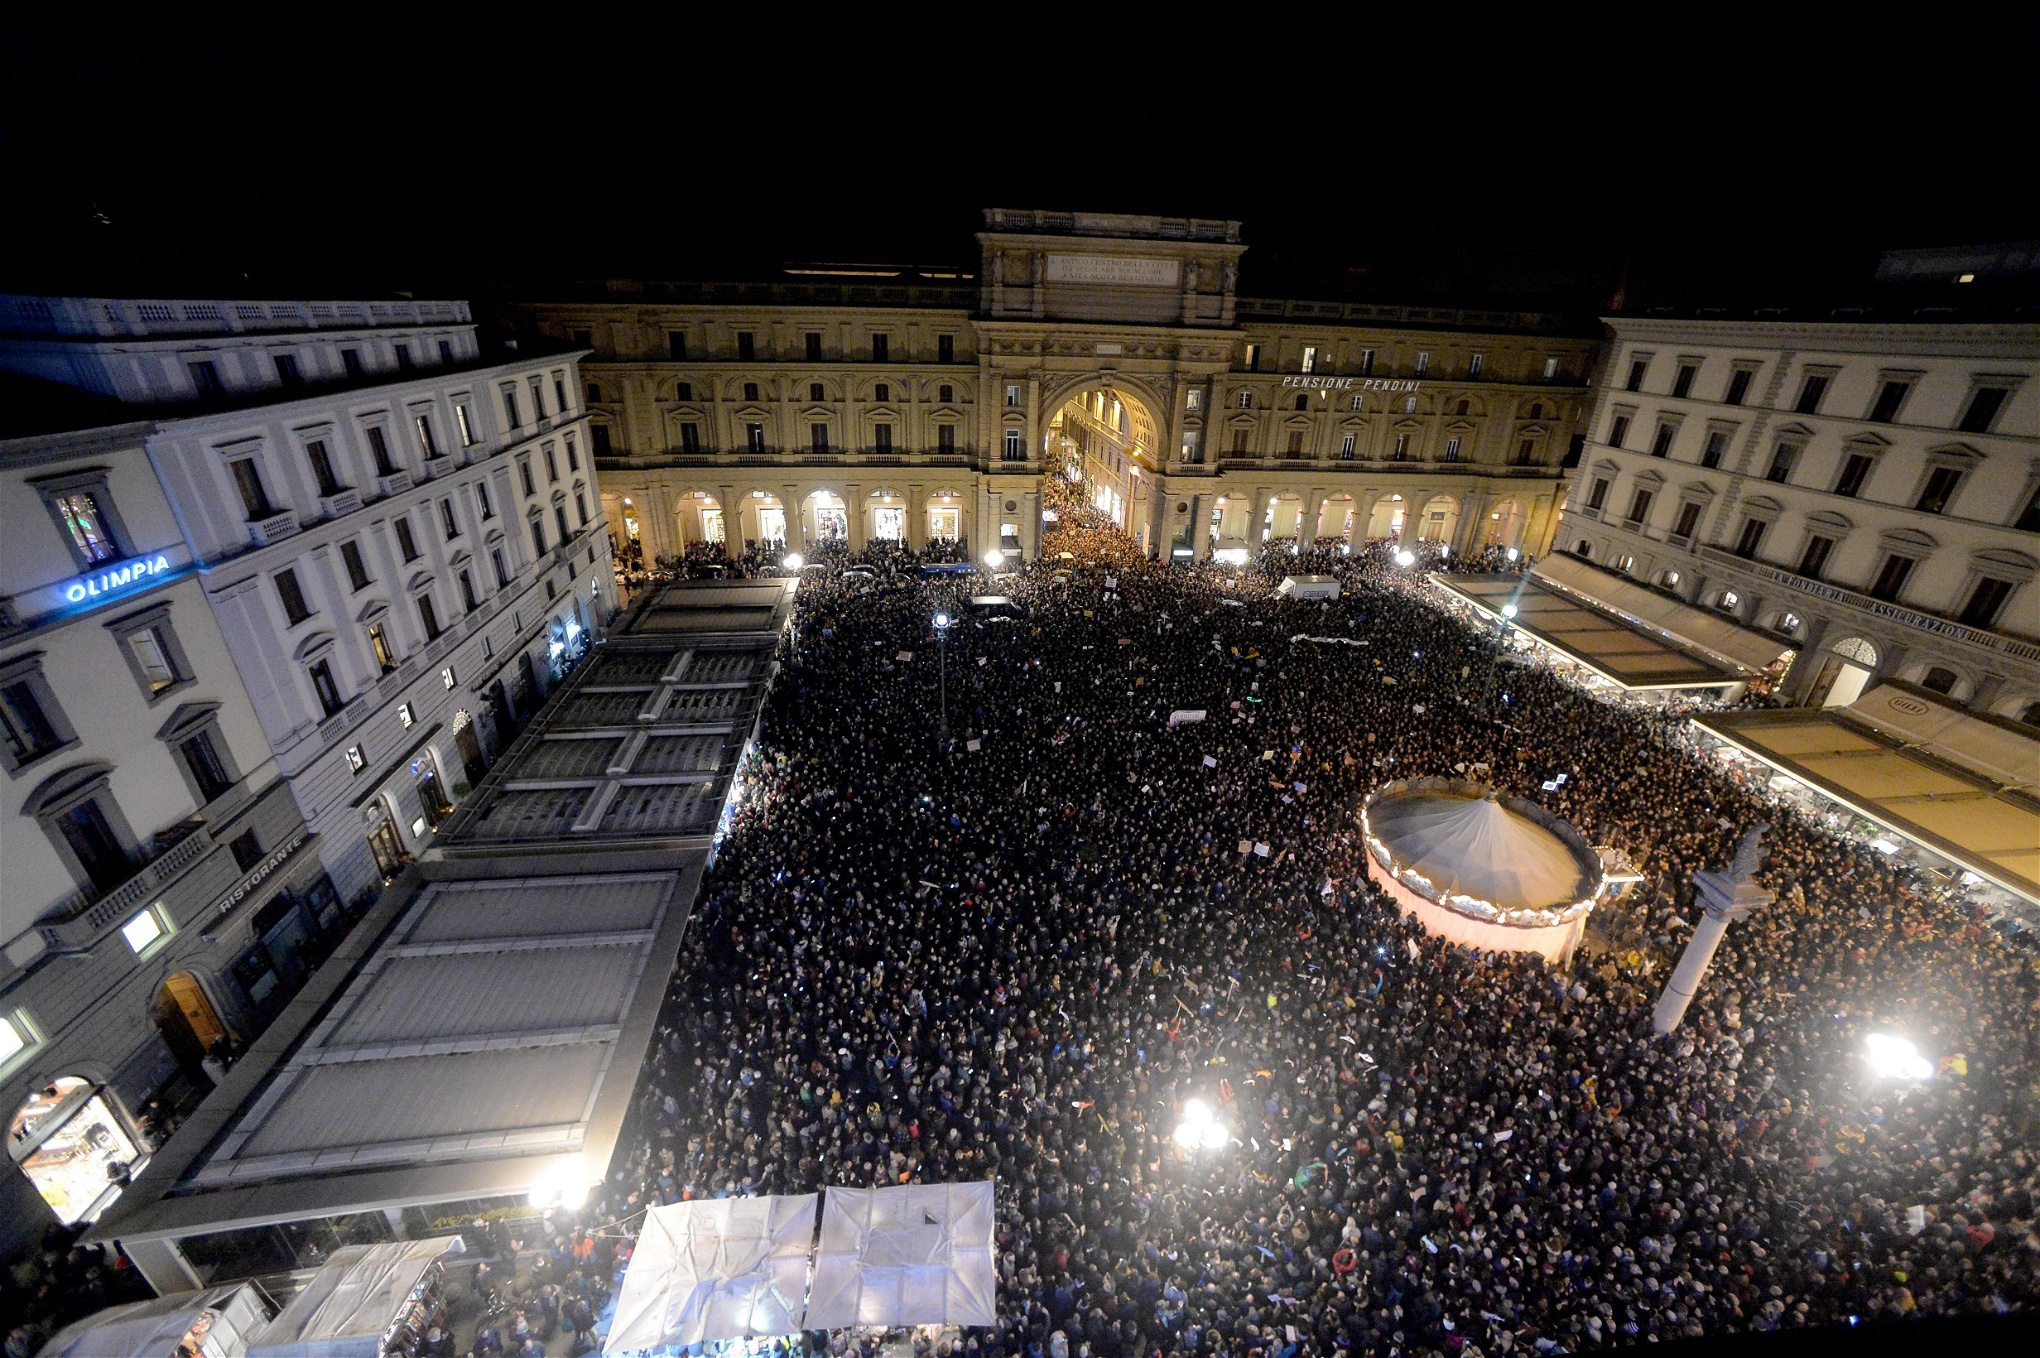 I Florens samlades på lördagen omkring 15 000 personer på Piazza della Repubblica för att protestera mot Salvini och hans parti Lega.